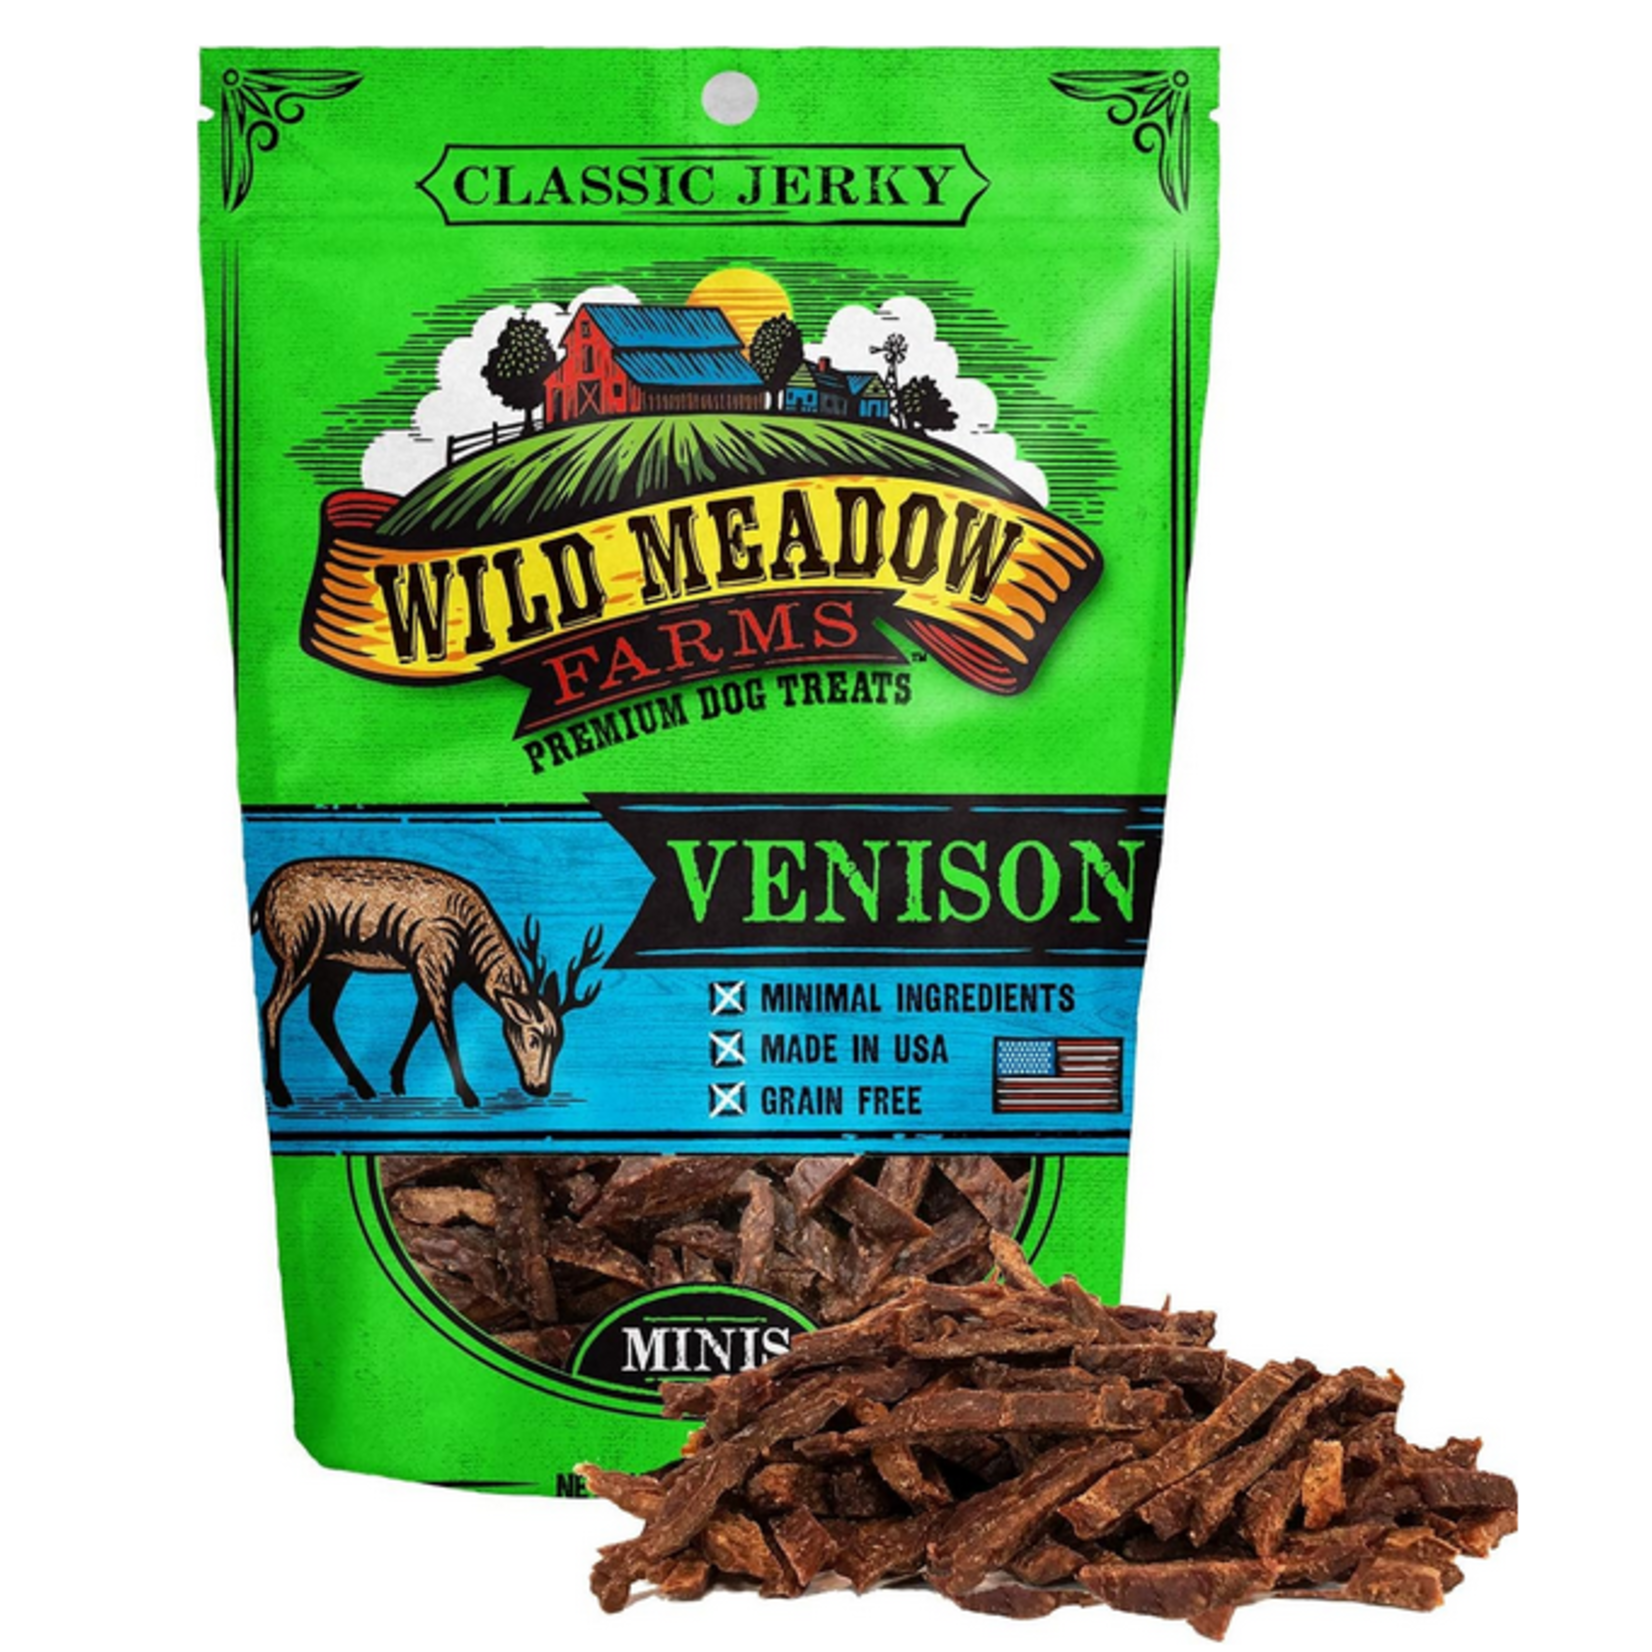 Wild Meadow Farms 3.5 oz. - Venison - Classic Minis - Semi-Soft Dog Treat - Wild Meadow Farms